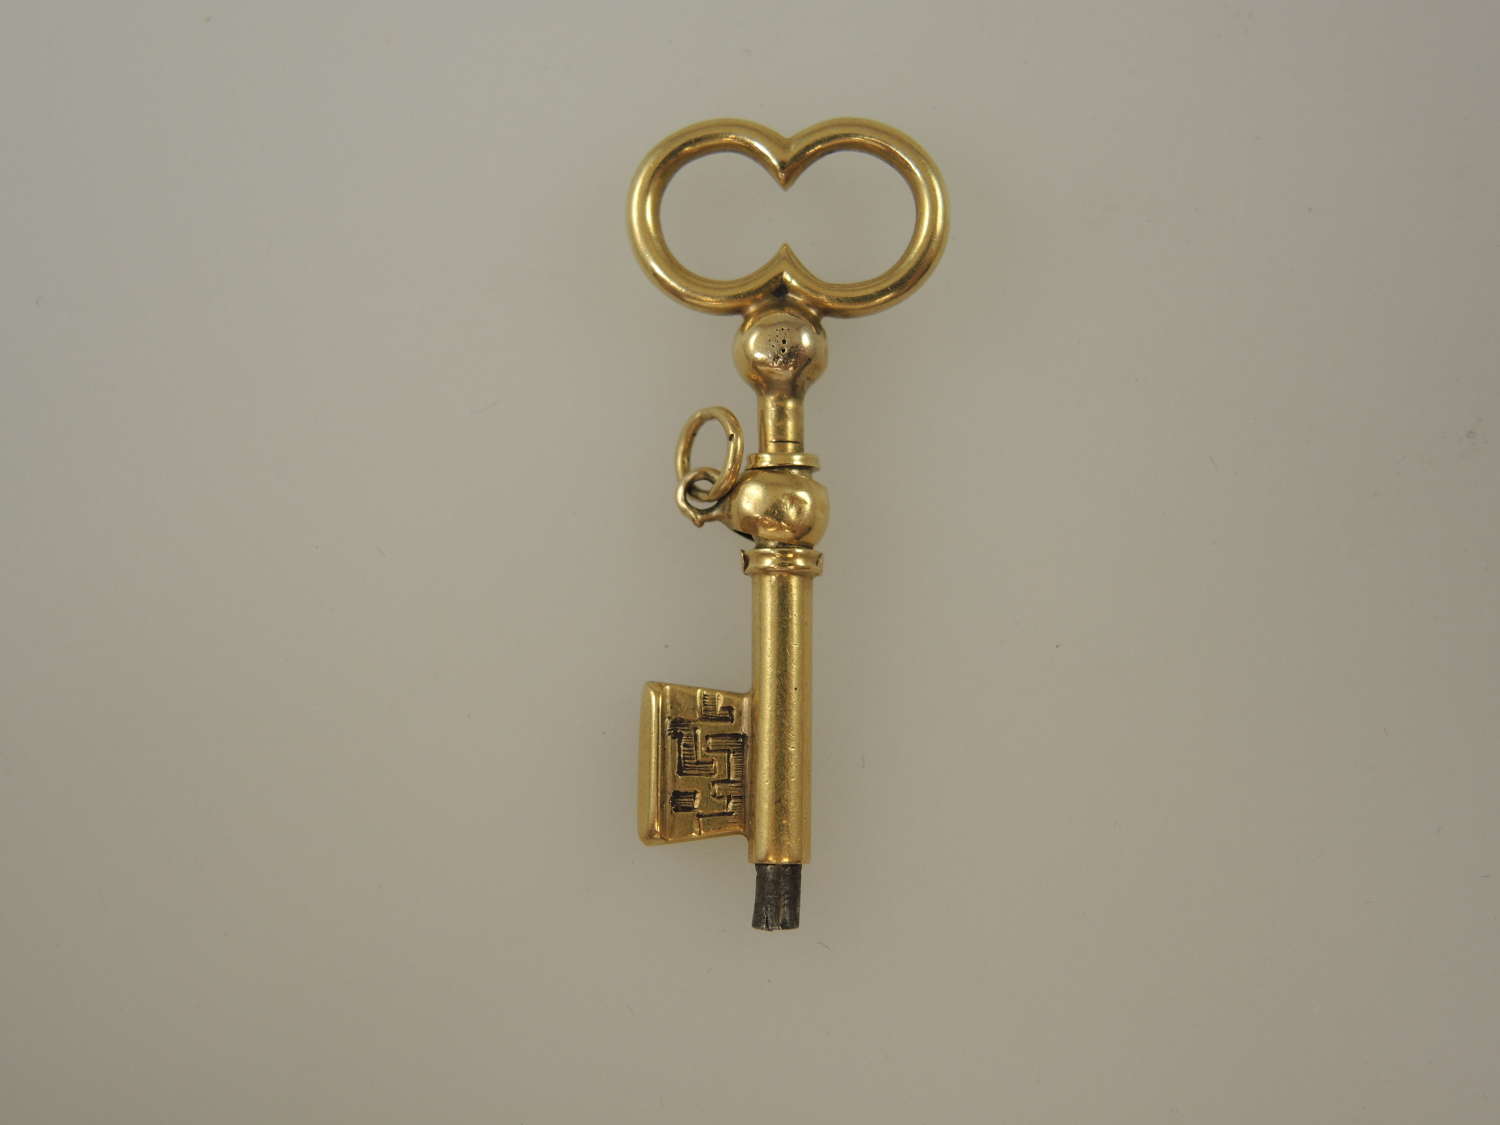 Unusual solid 18K gold KEY shaped pocket watch key c1825